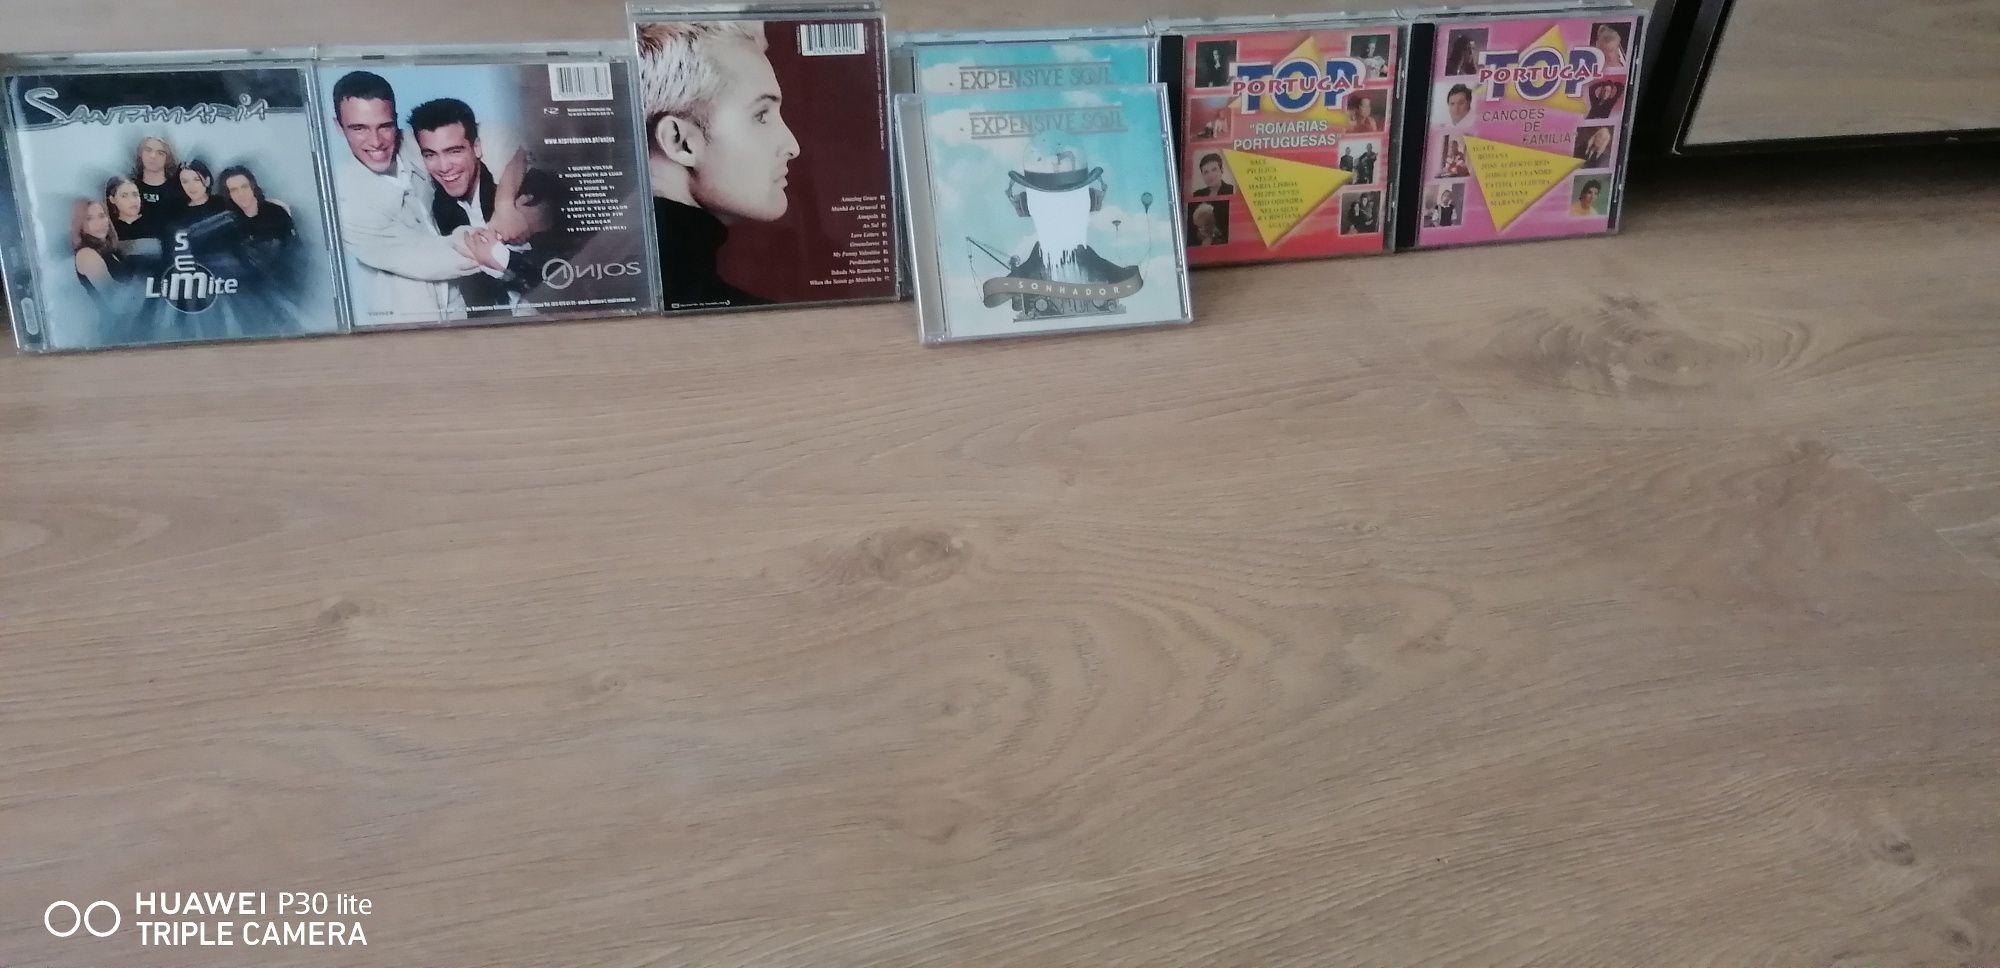 CD's originais de música